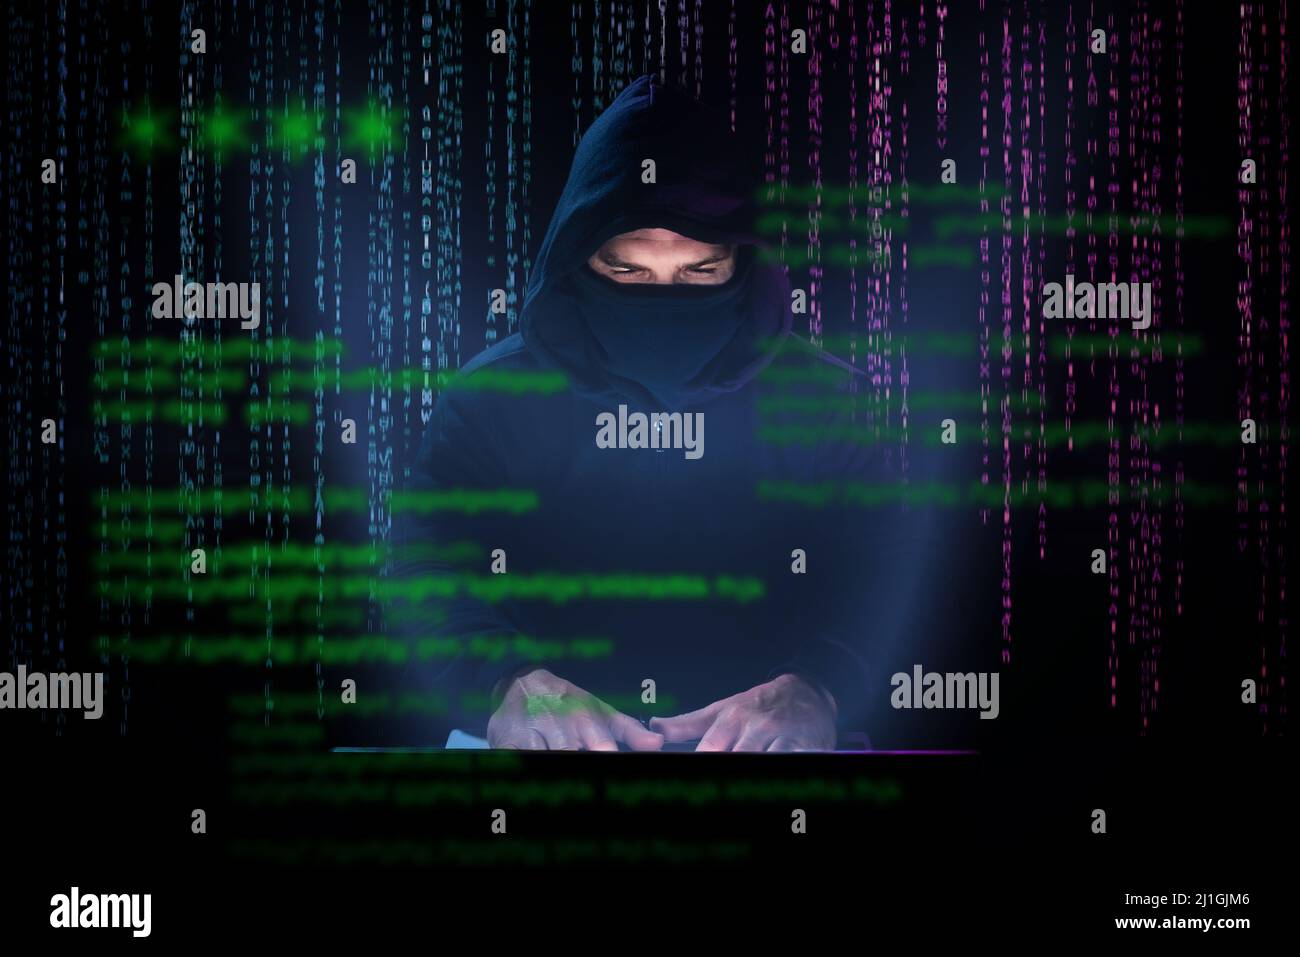 Pirate essayant de craquer les mots de passe et de violer la sécurité d'Internet. Alarme anti-hameçonnage Banque D'Images